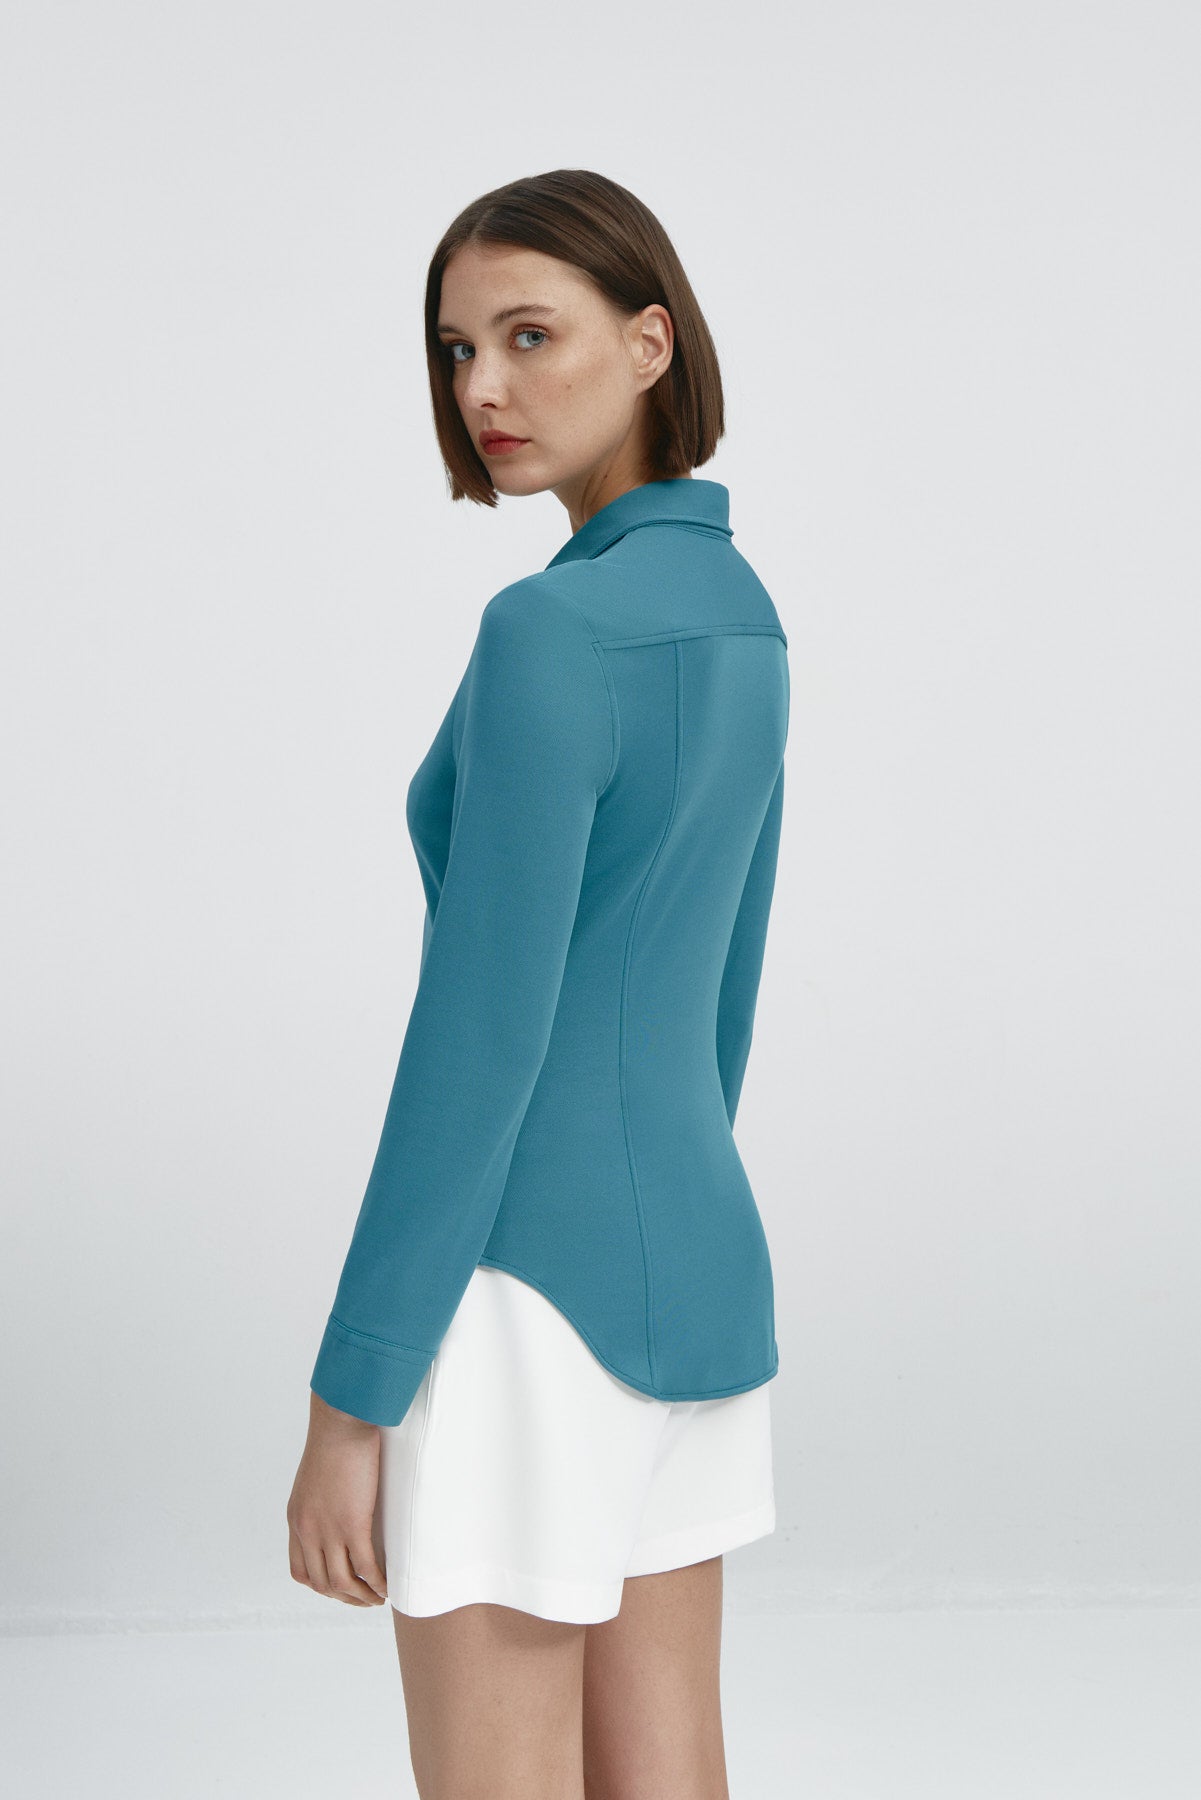 Camisa para mujer slim color azul neptuno, básica y versátil. Foto espalda